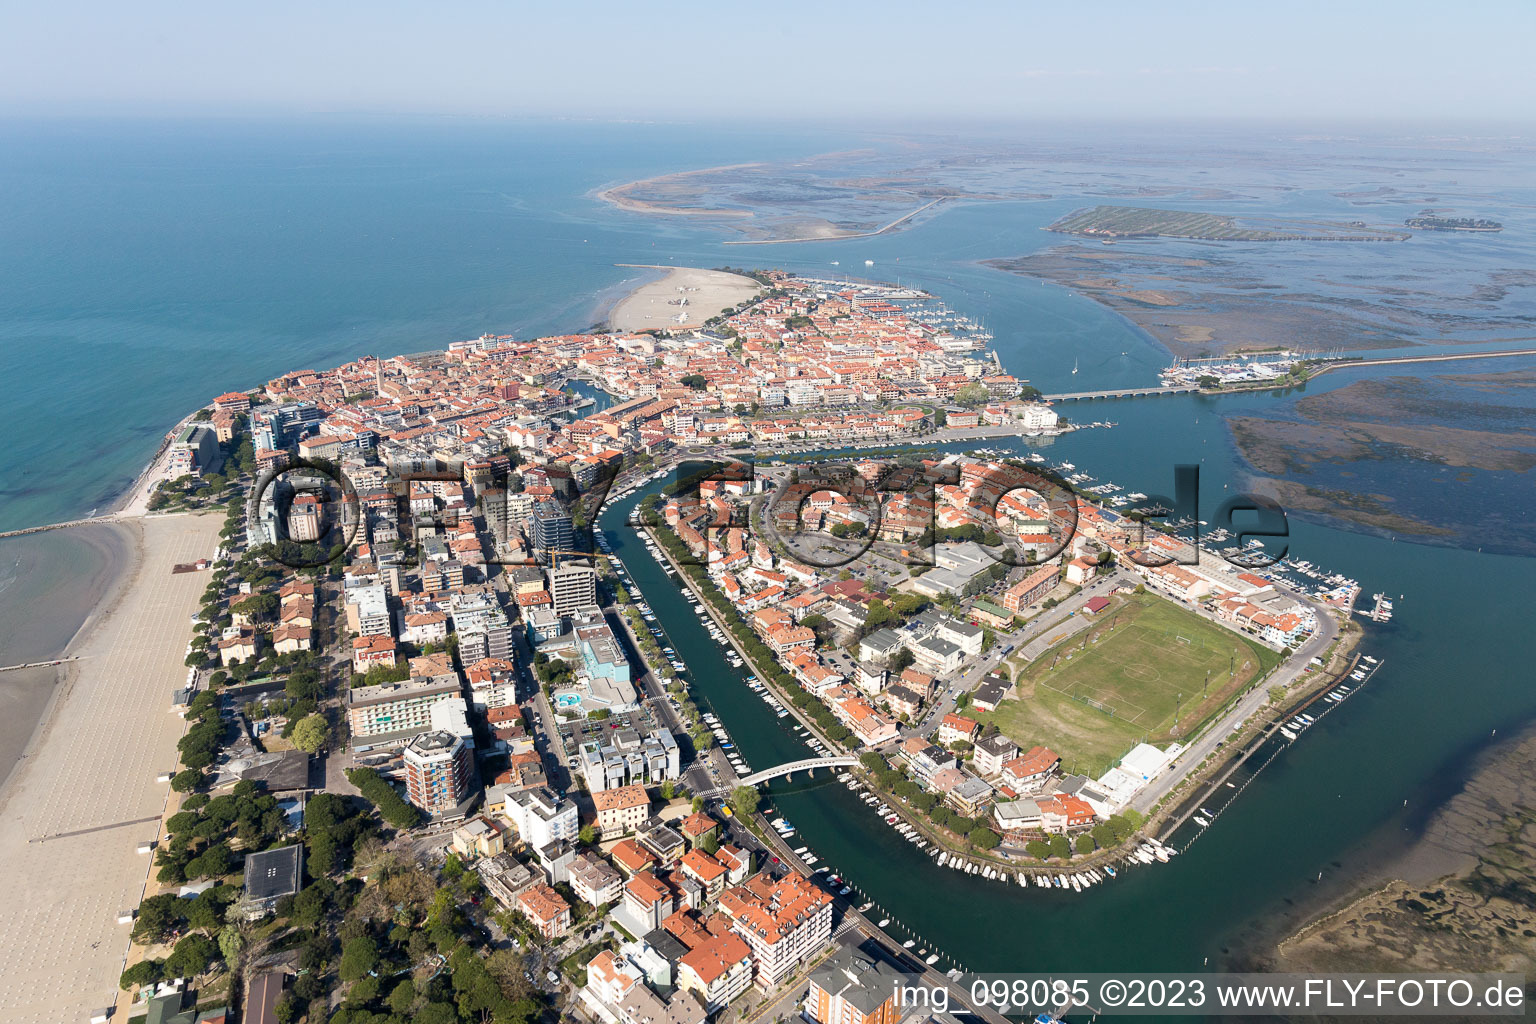 Aerial view of Grado in the state Friuli Venezia Giulia, Italy